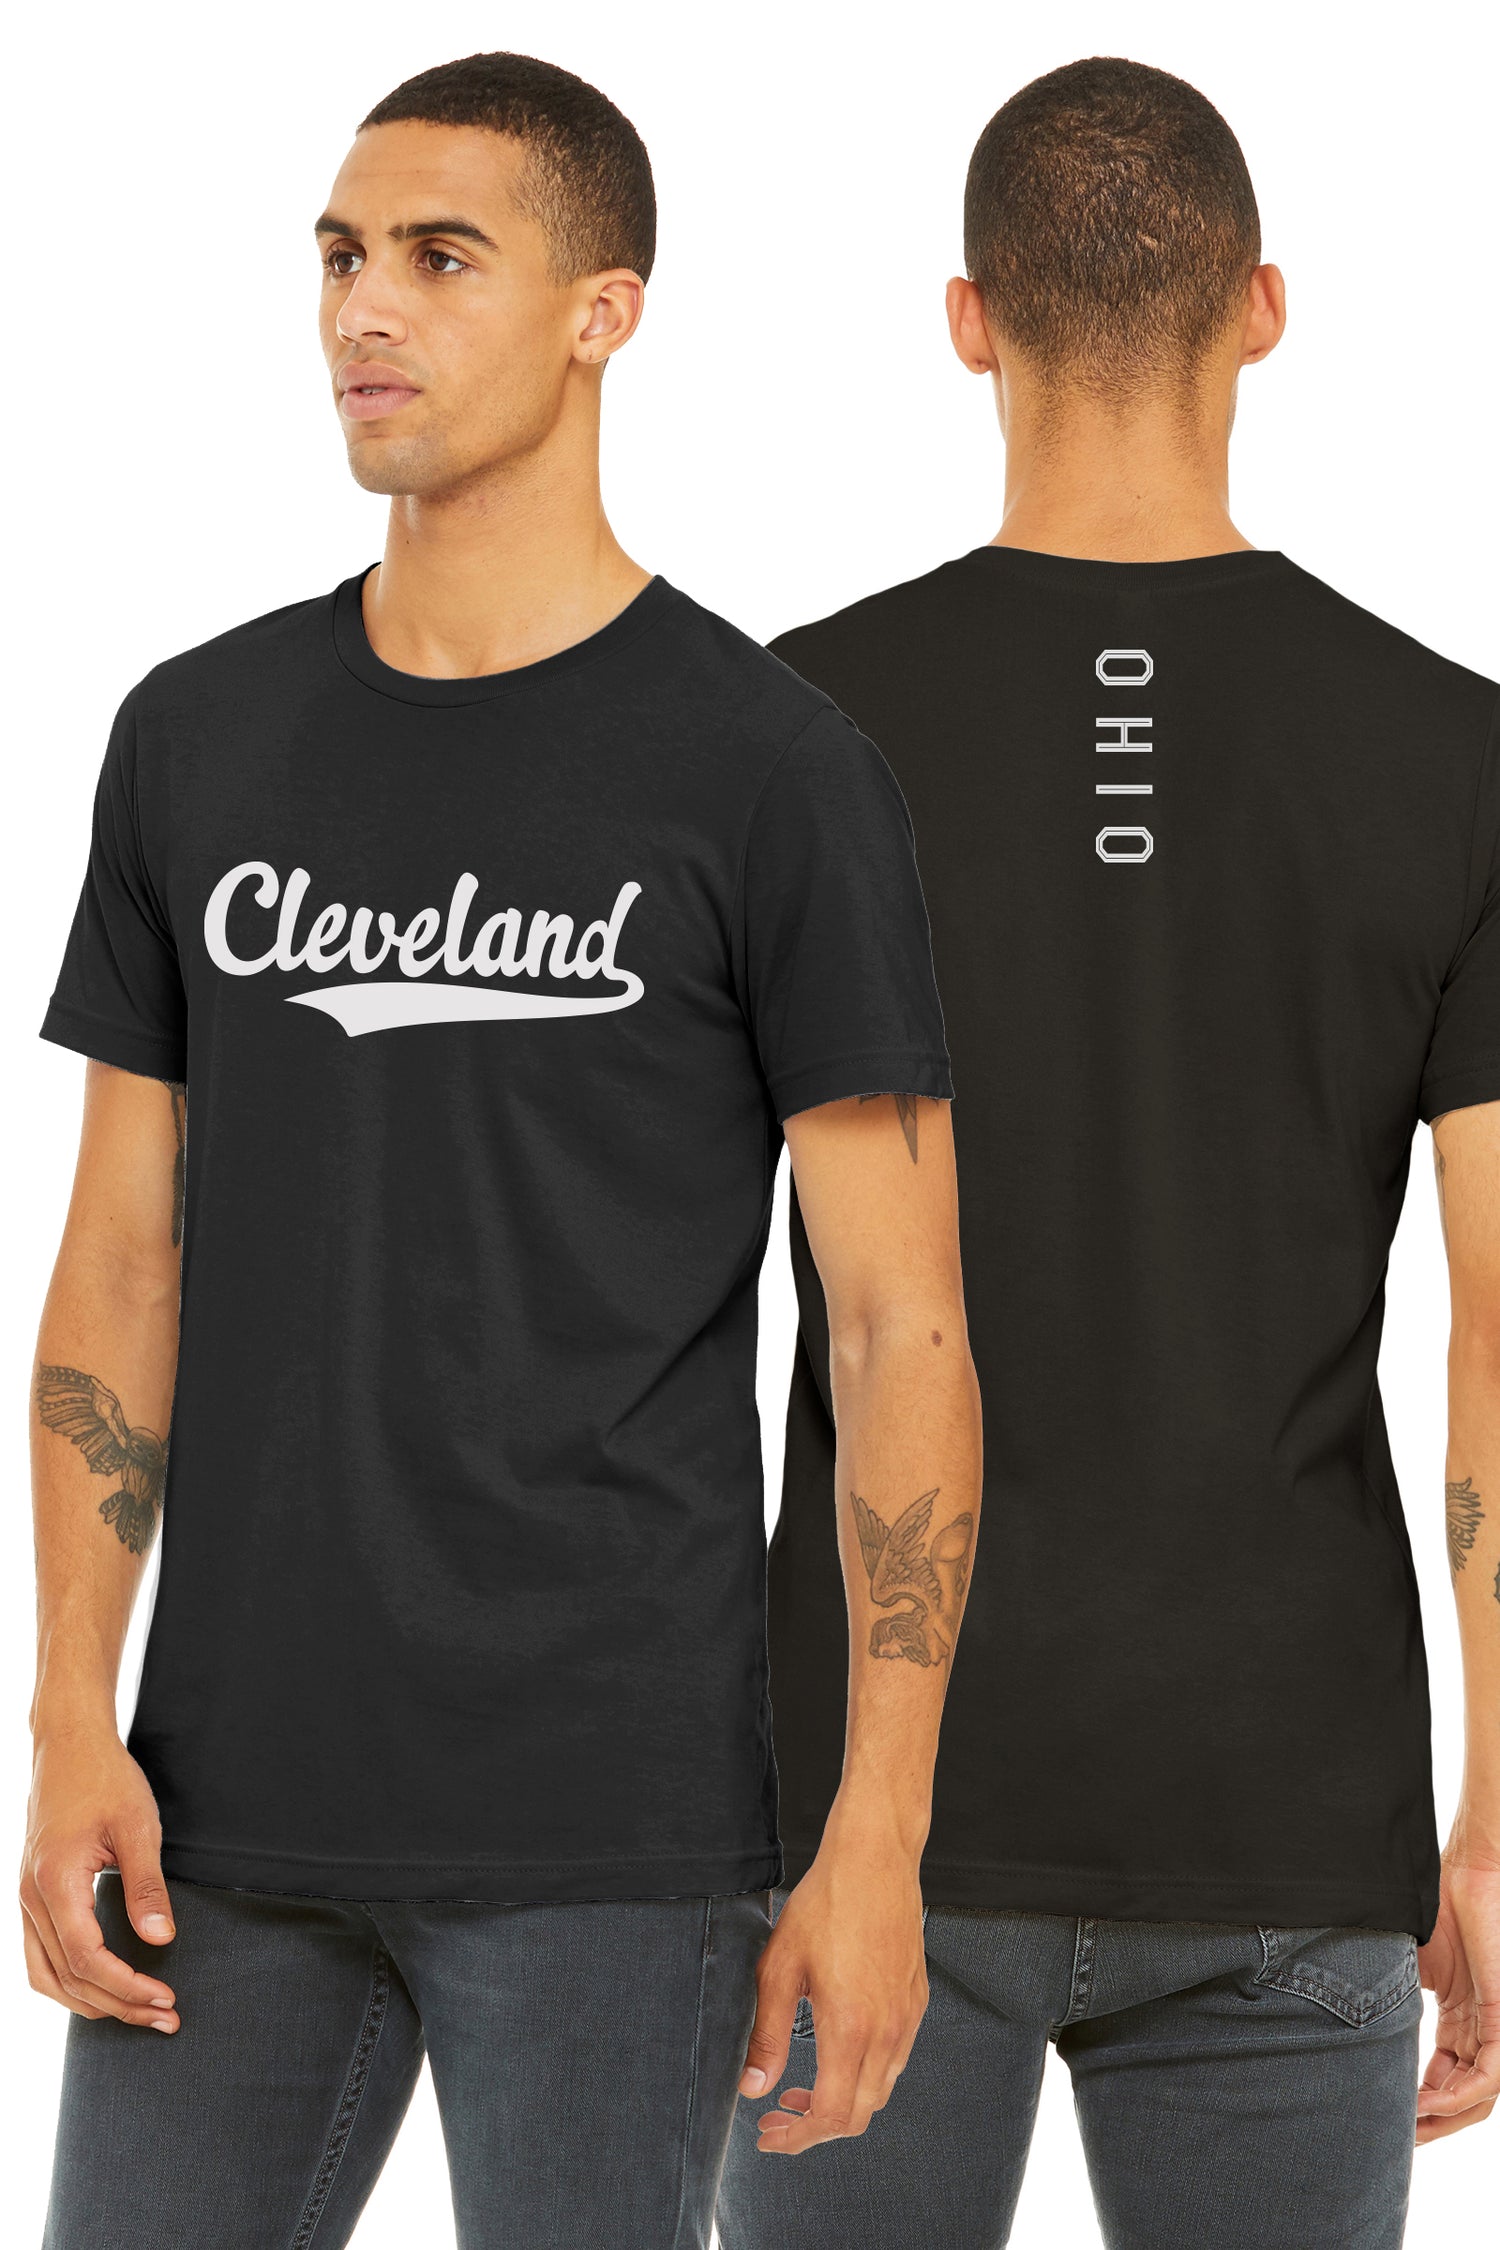 Cleveland Clothing